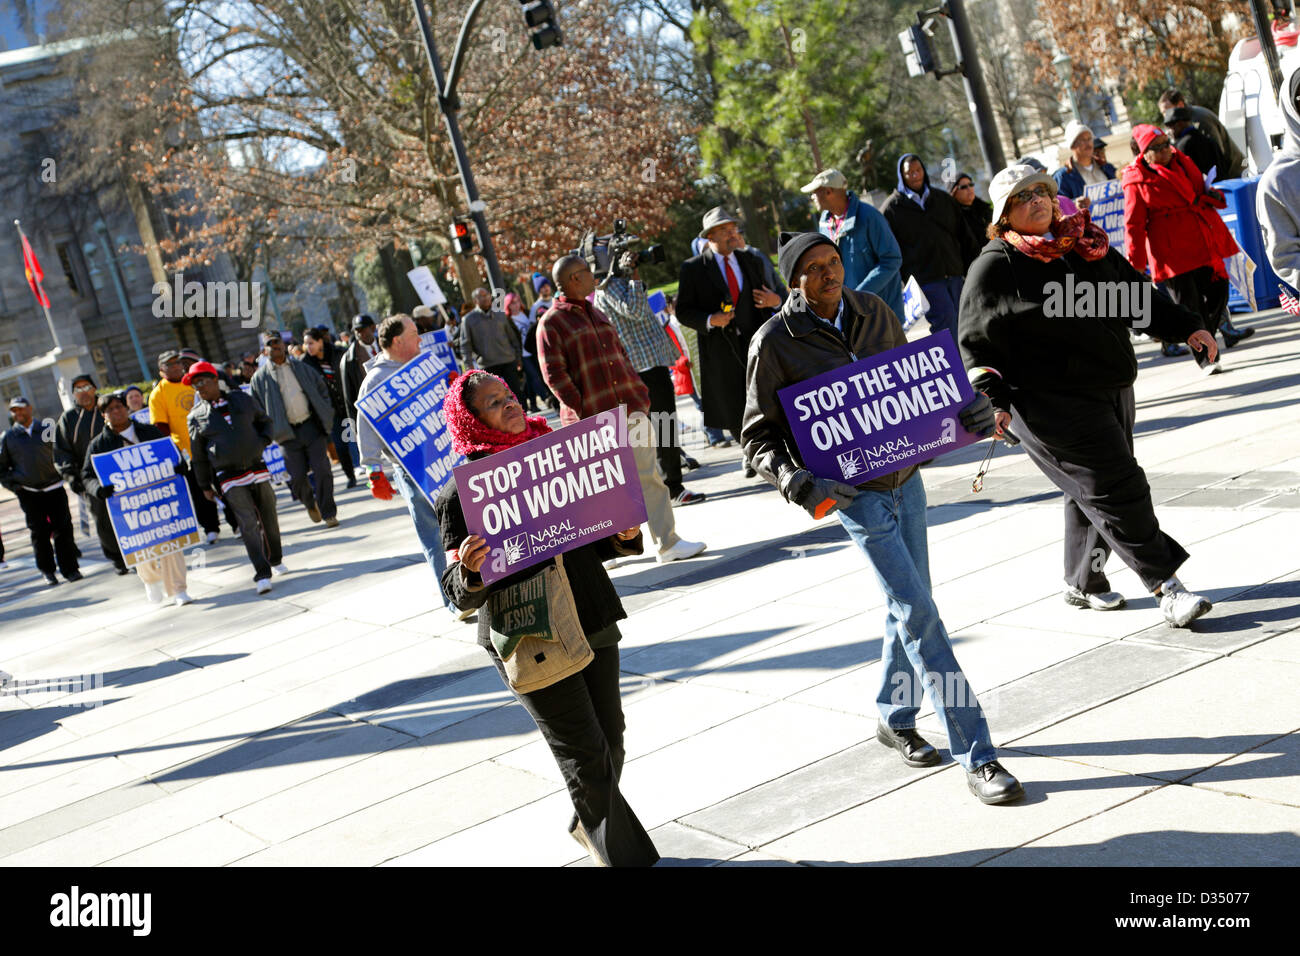 Raleigh, North Carolina, USA, 9. Februar 2013: Siebte "historische Tausende an der Jones Street" (HKonJ7) Demonstration. Pro-Wahl Demonstranten im Vordergrund mit "stoppt den Krieg auf Frauen" Zeichen. Stockfoto